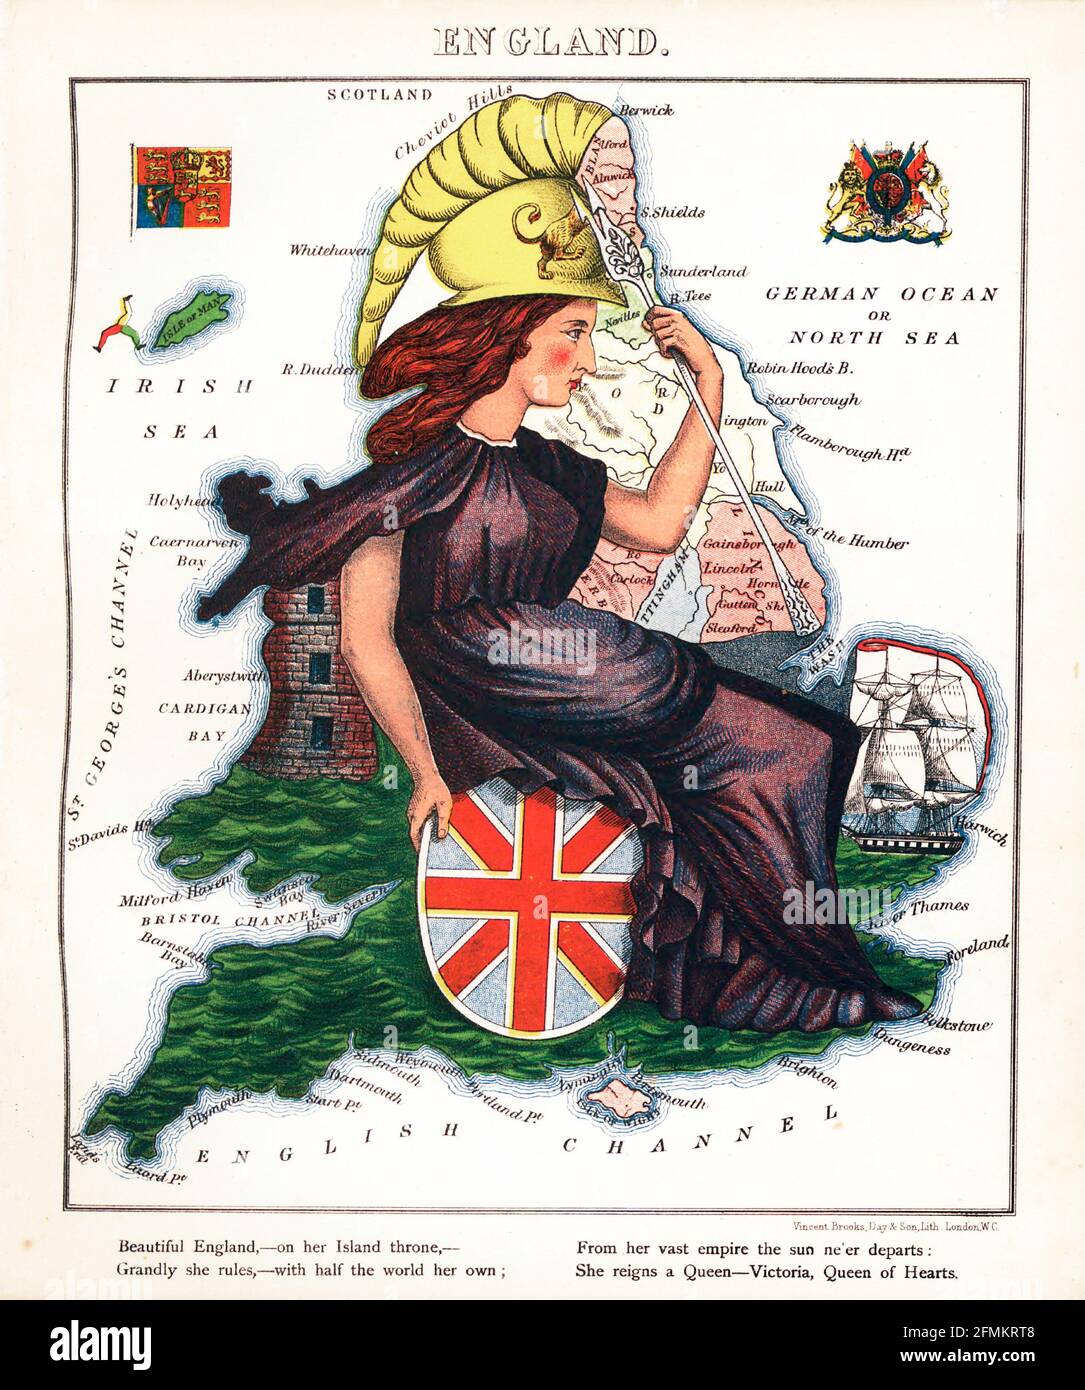 Inghilterra – divertimento geografico. Mappa satirica / cartografica illustrata. Pubblicato a Londra dalla ditta di Hodder e Stoughton nel 1869. Foto Stock